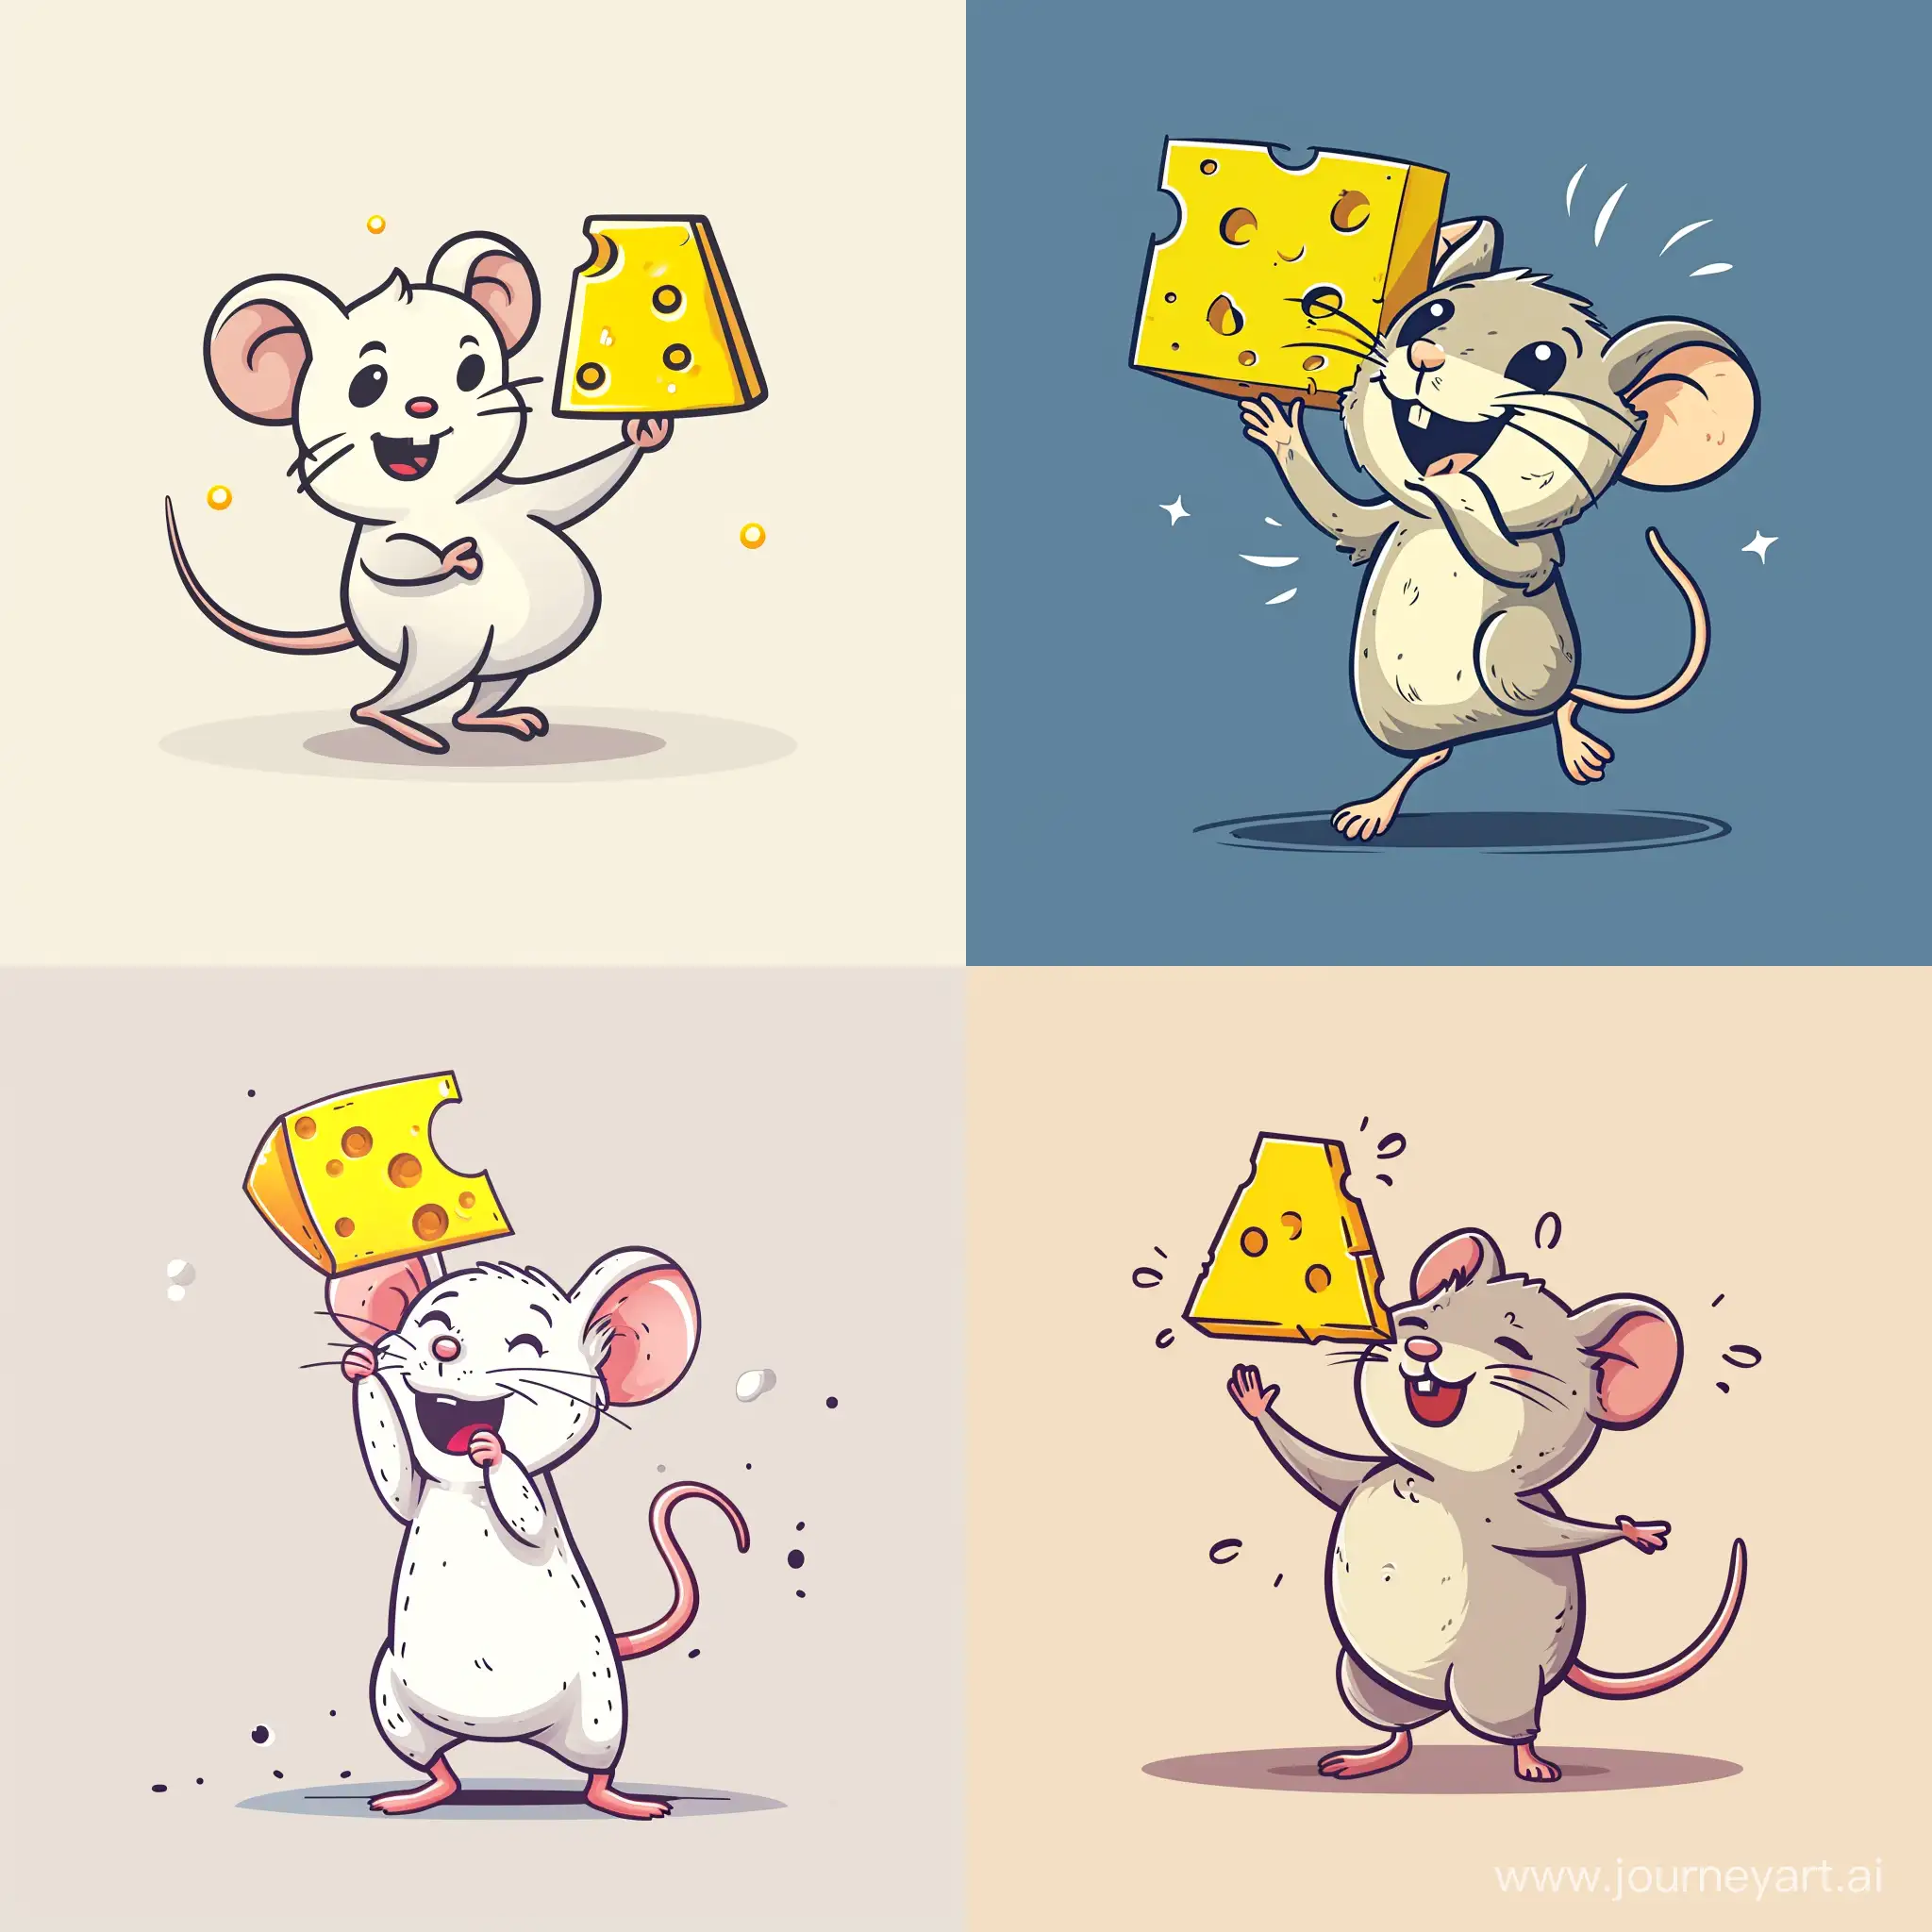 Joyful-Mouse-Holding-Yellow-Cheese-in-Minimalist-Cartoon-Style